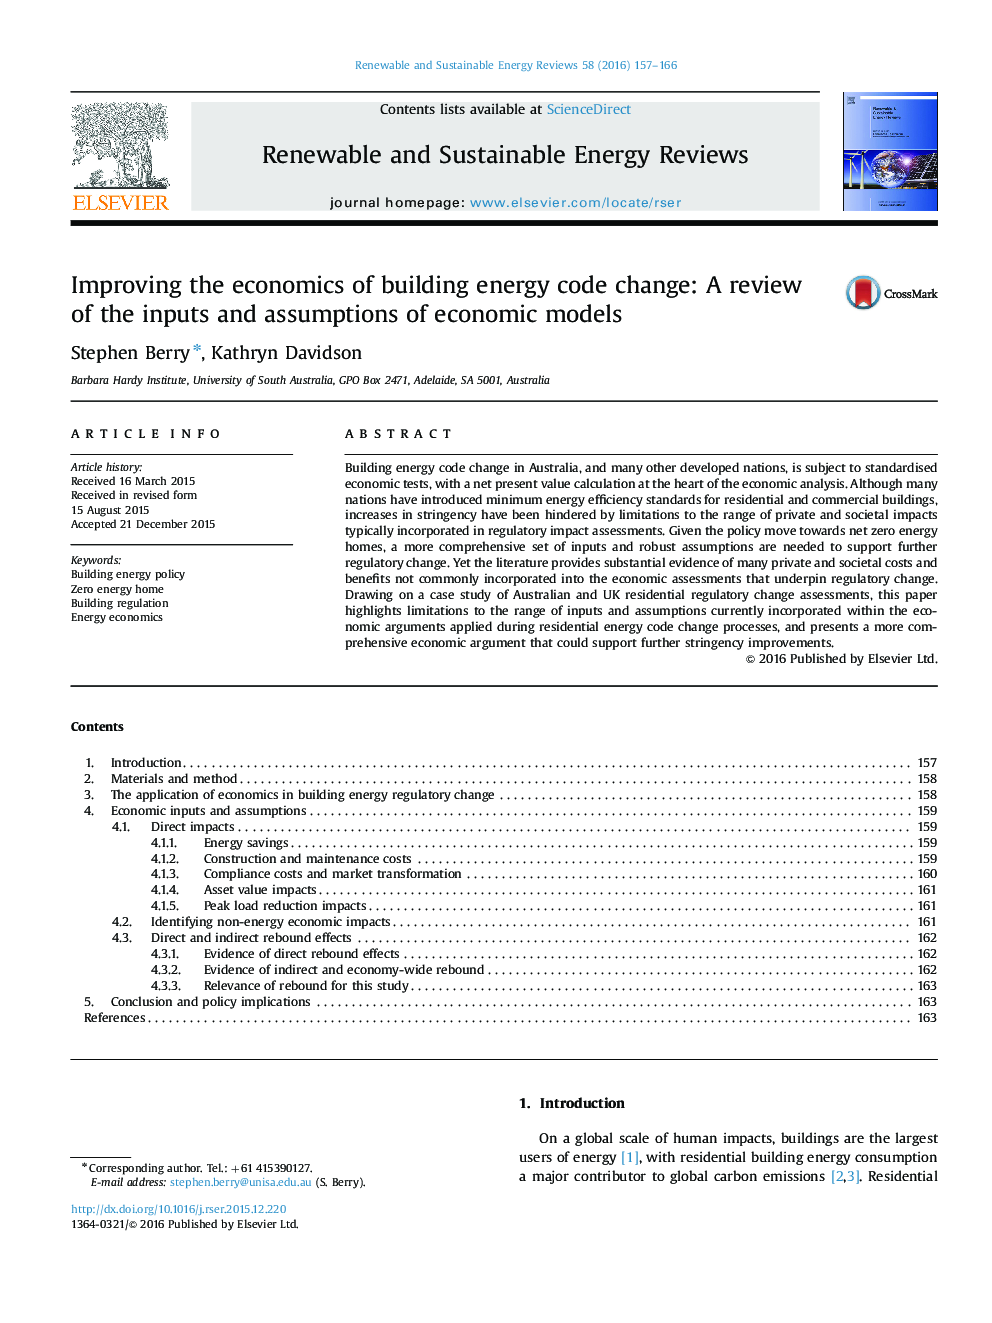 بهبود اقتصاد تغییر ساختار انرژی: بازبینی ورودی ها و فرضیه های مدل های اقتصادی 